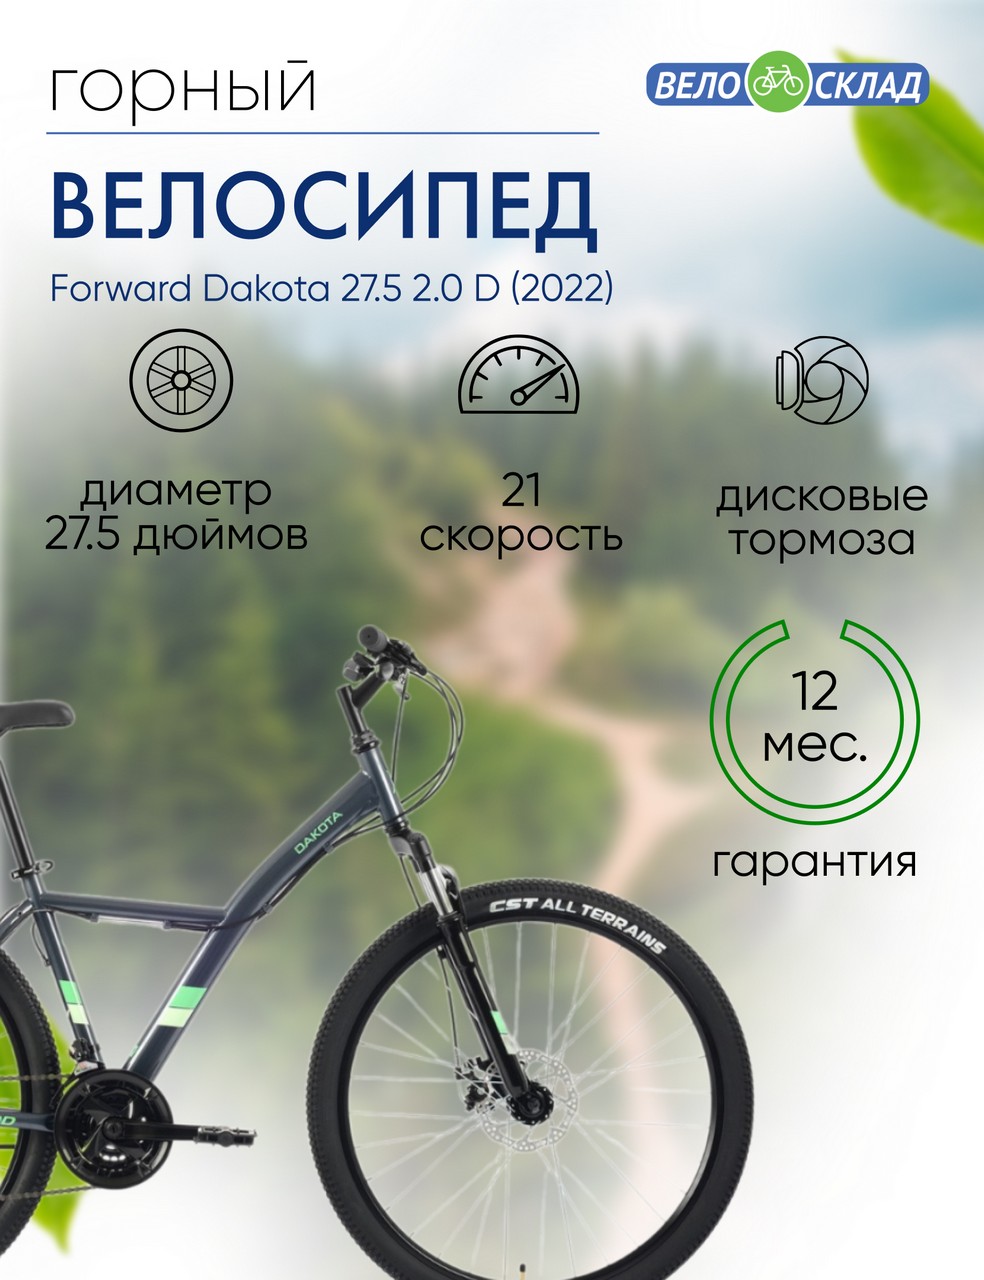 Горный велосипед Forward Dakota 27.5 2.0 D, год 2022, цвет Серебристый-Зеленый, ростовка 16.5